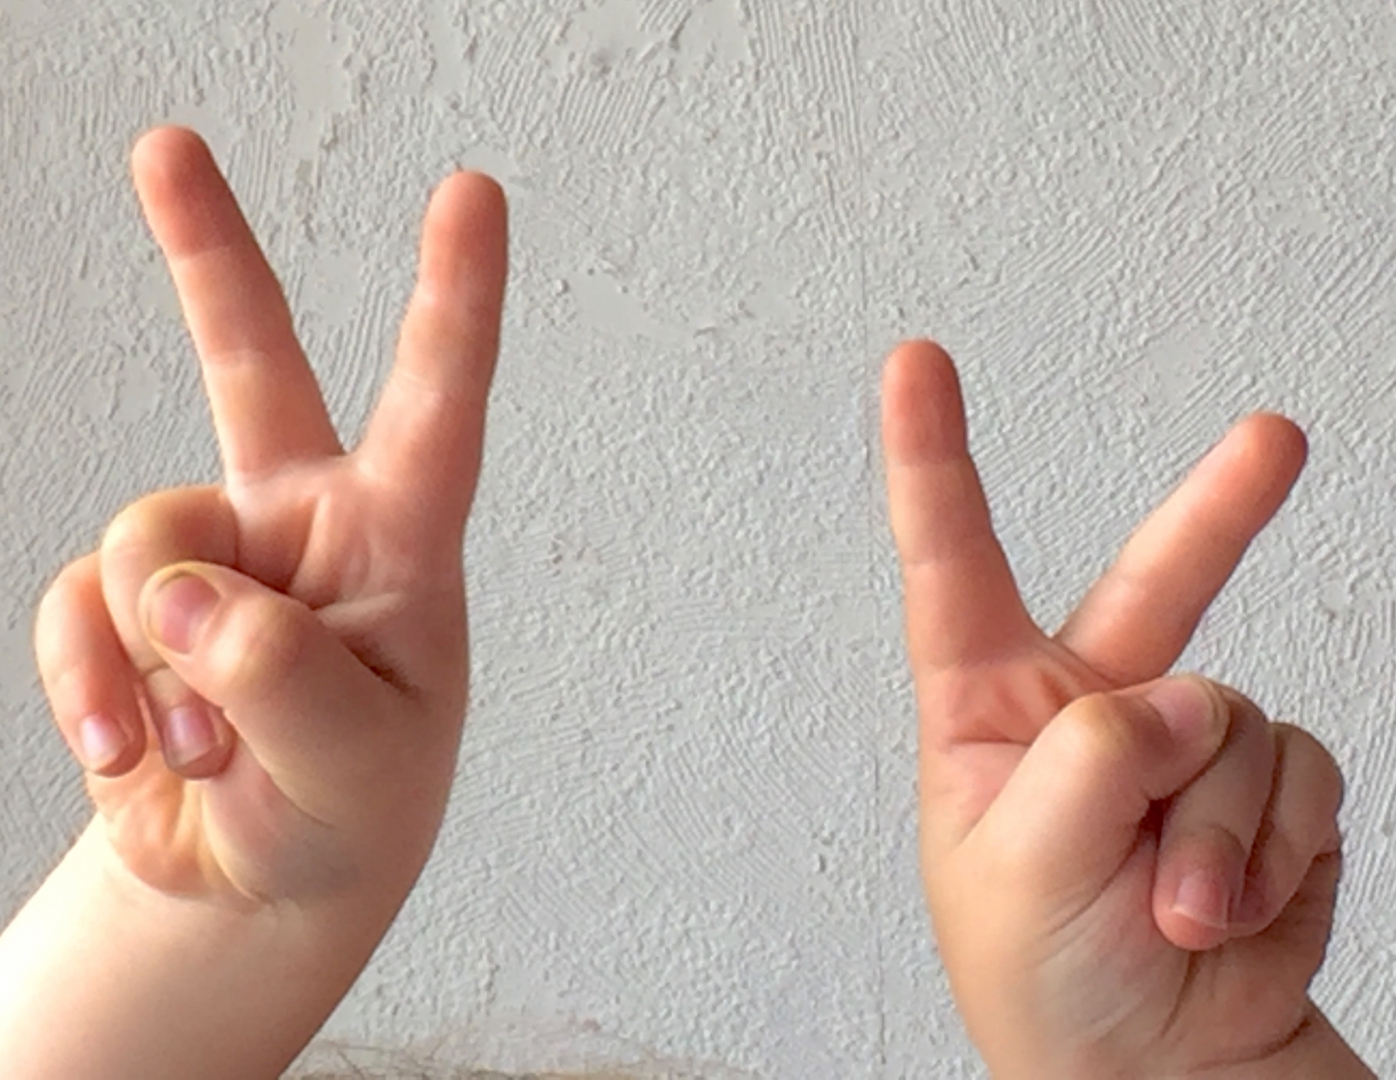 Foto von zwei Kinderhänden. Zeige- und Mittelfinger der beiden Hände sind jeweils ausgestreckt, alle anderen Finger zeigen in die Handinnenfläche.